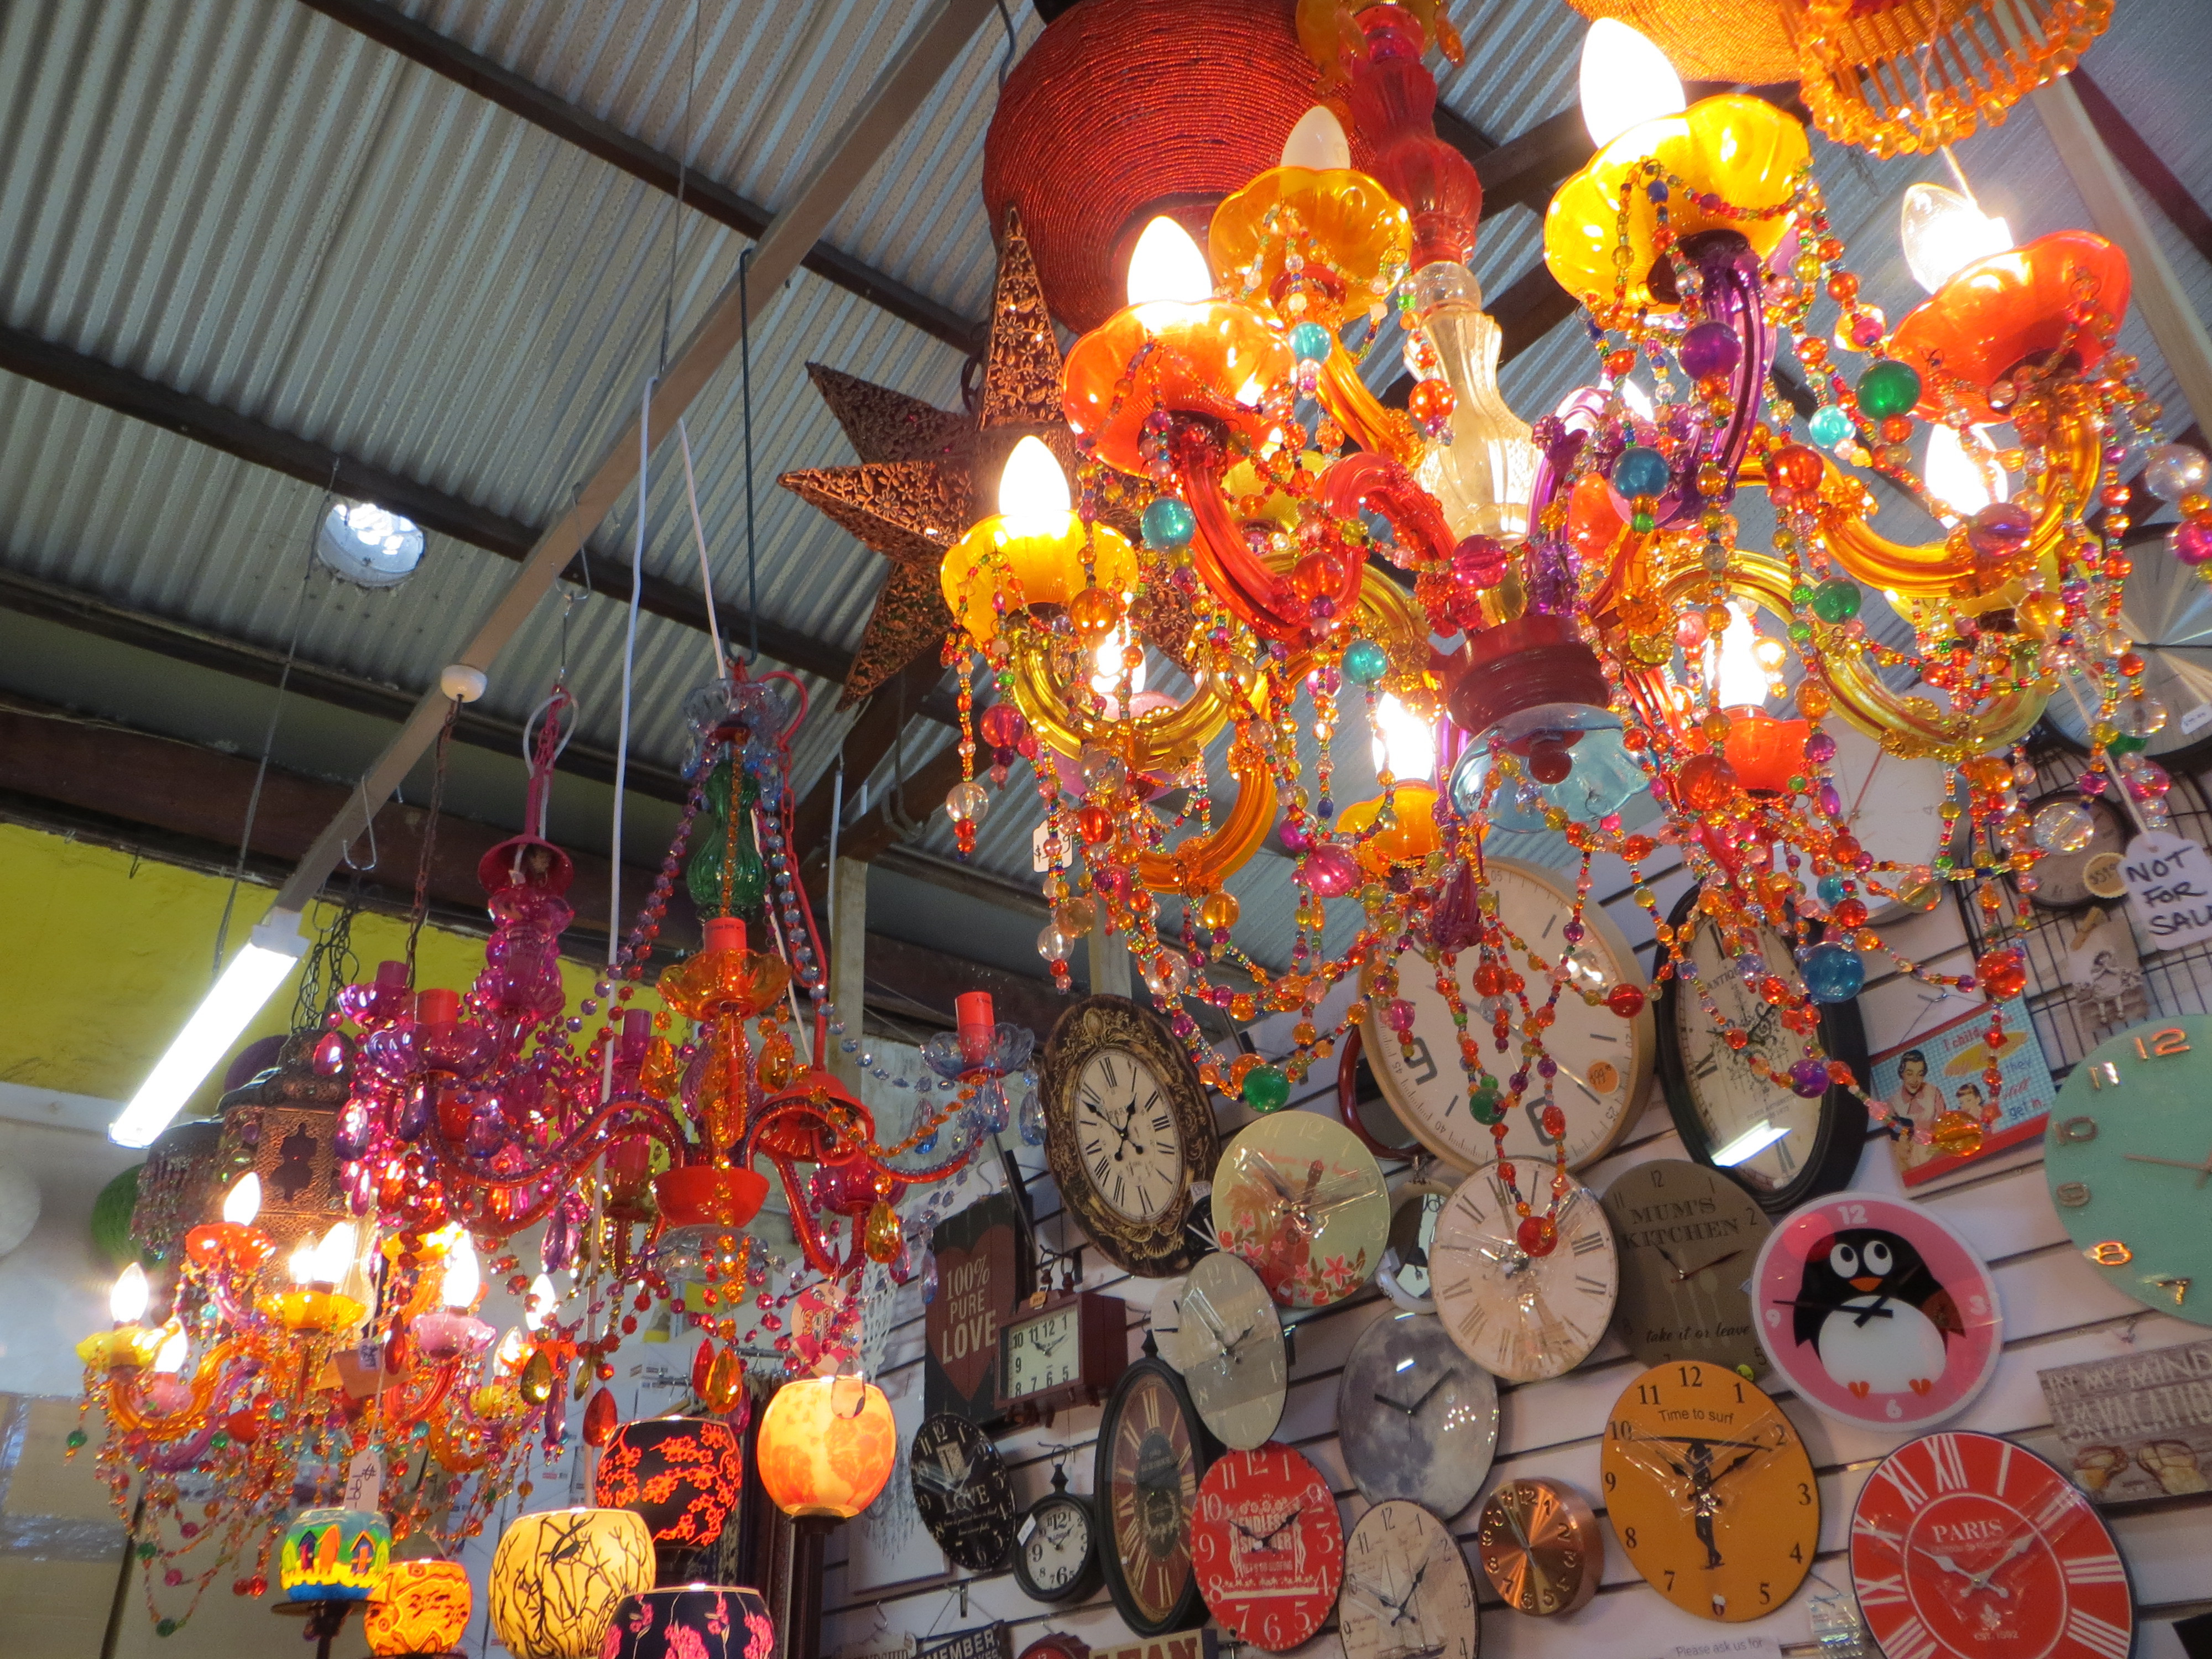 Fremantle markets chandeliers